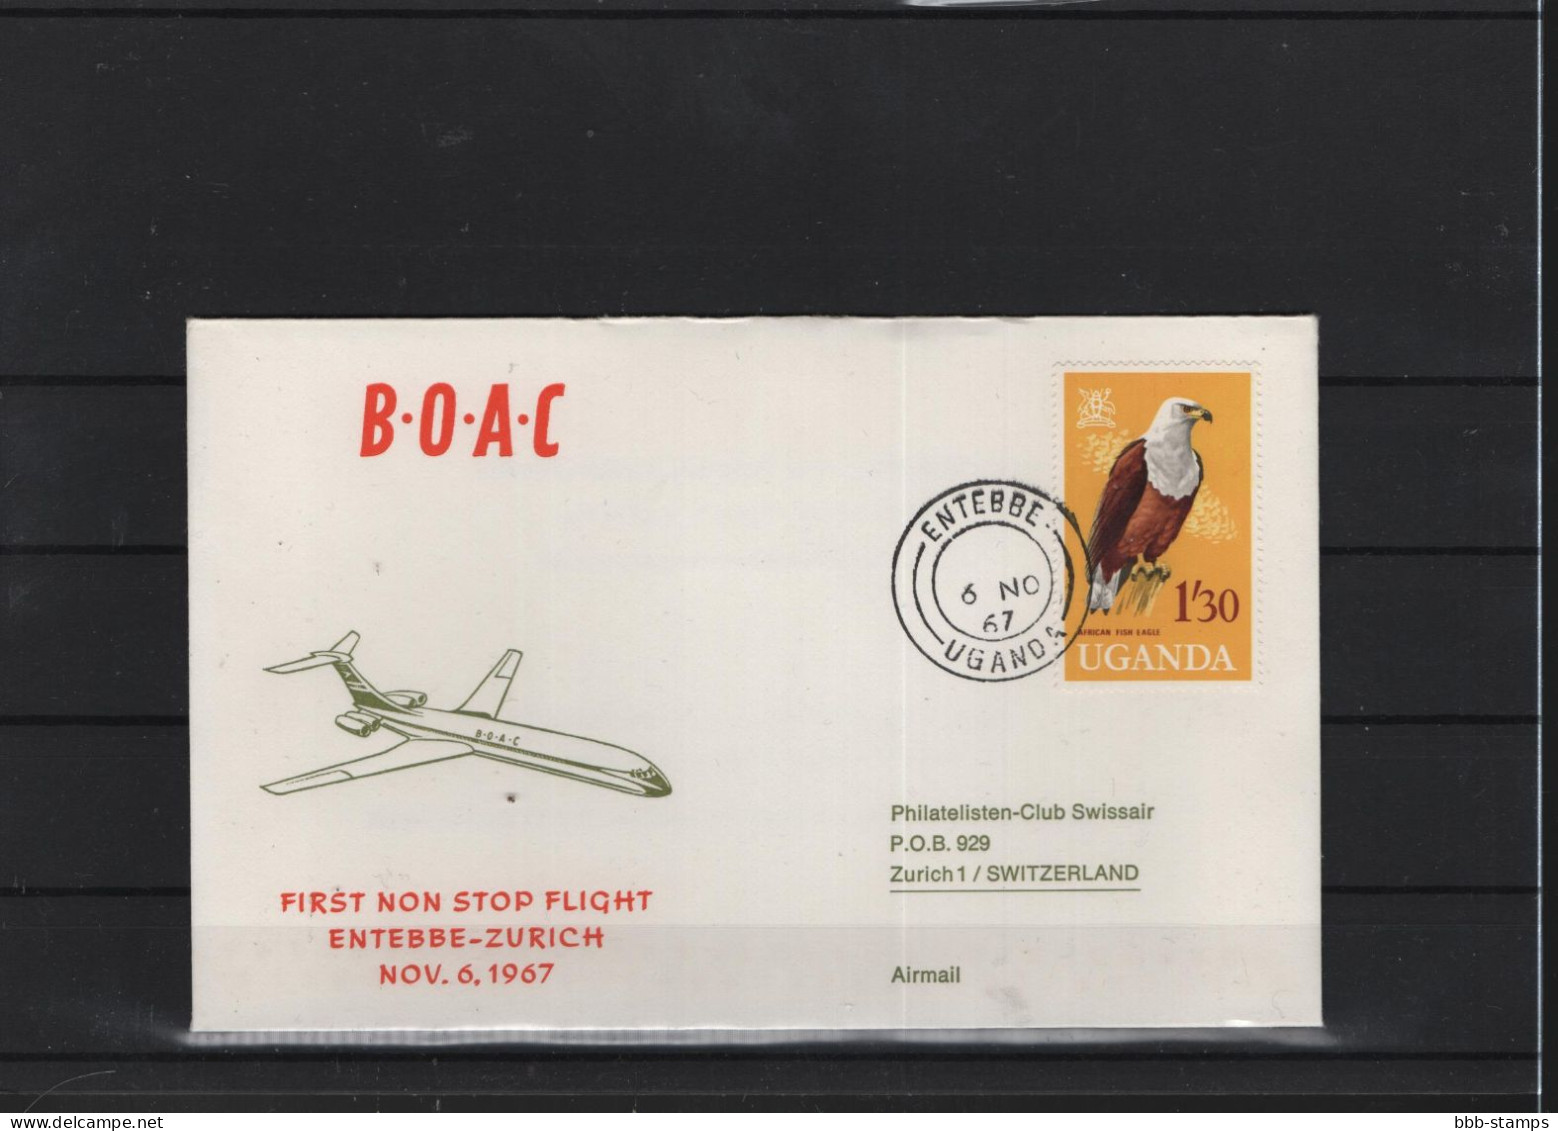 Schweiz Luftpost FFC BOAC 6.11.1966 Entebbe - Zürich - Premiers Vols